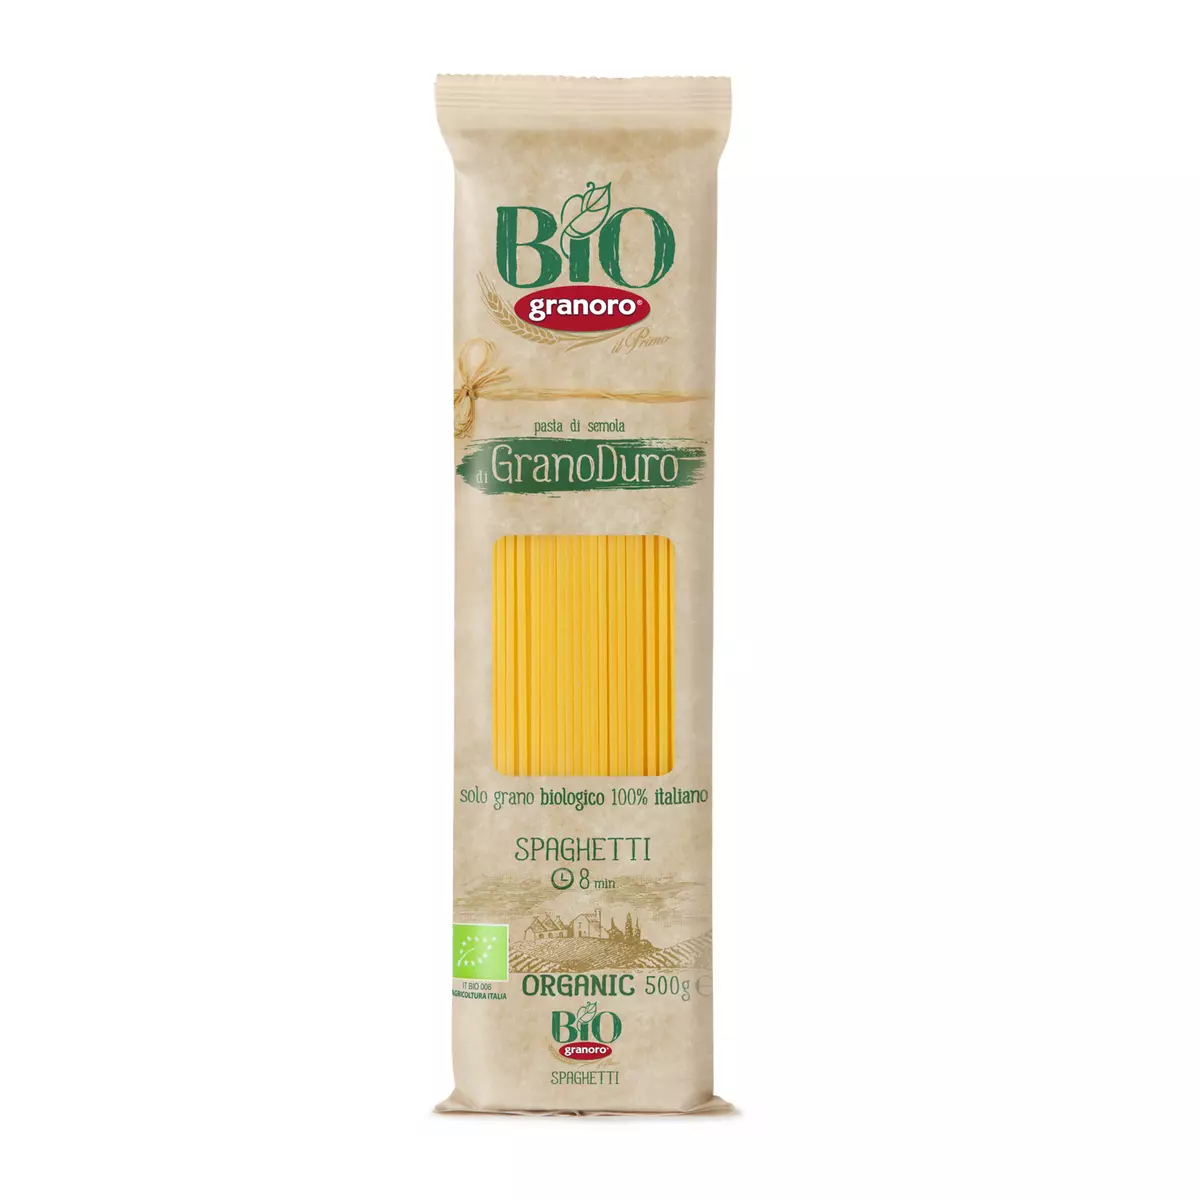 GRANORO Granoduro spaghetti bio 500g